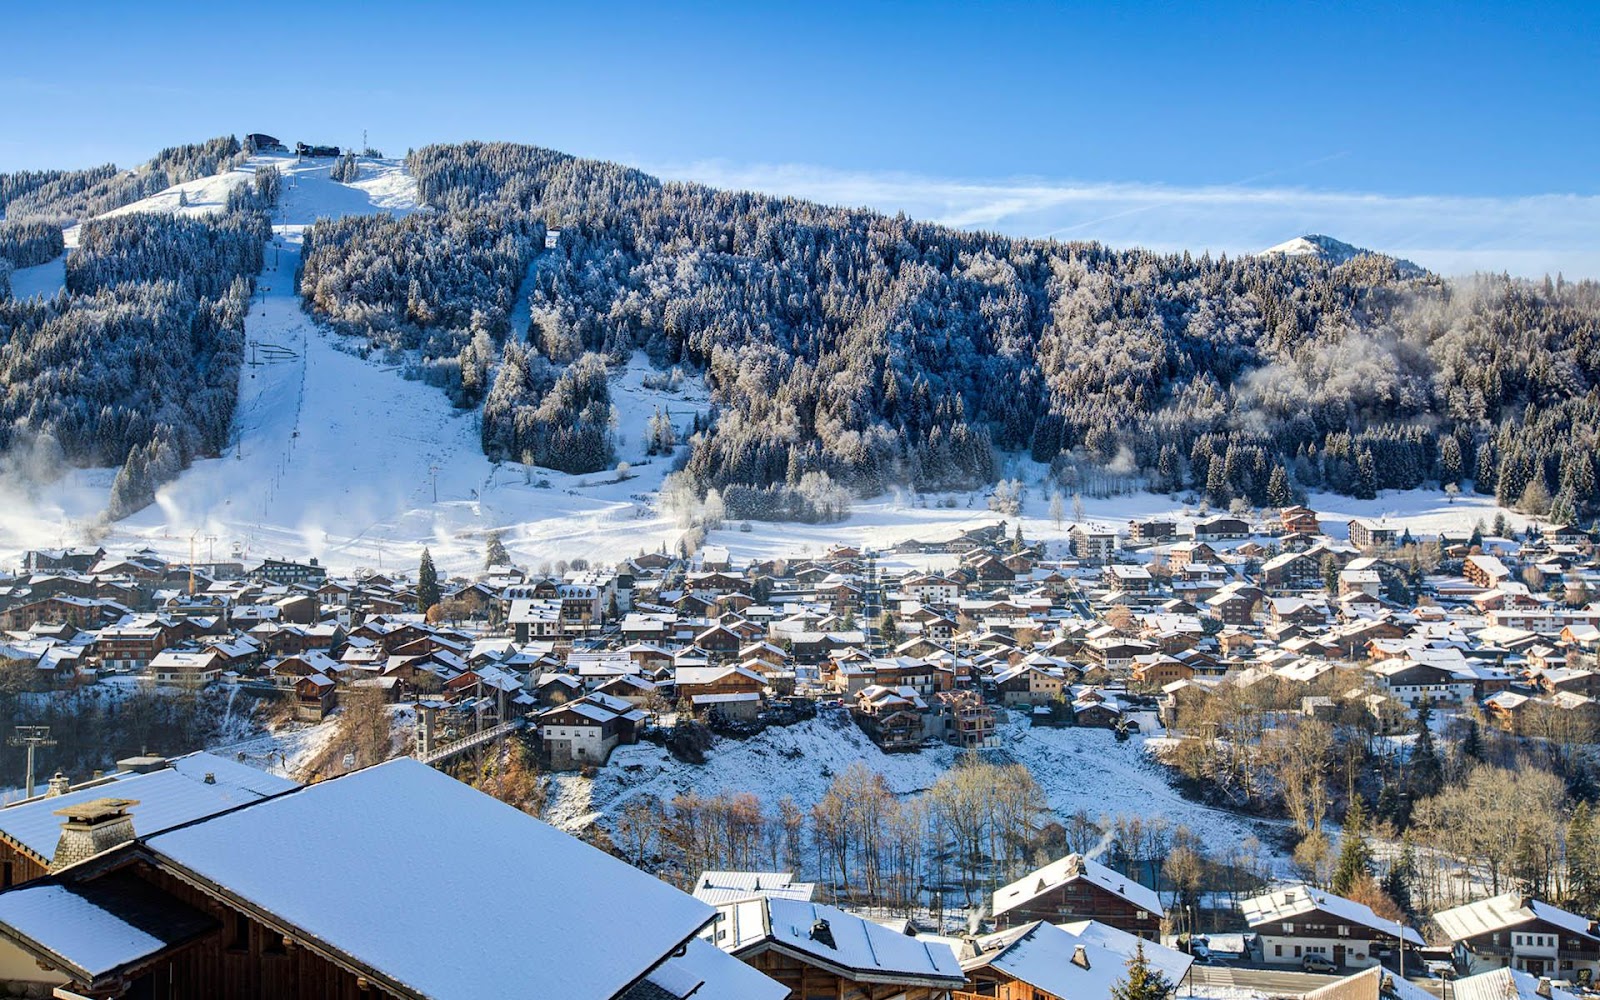 The ski resort of Morzine, France